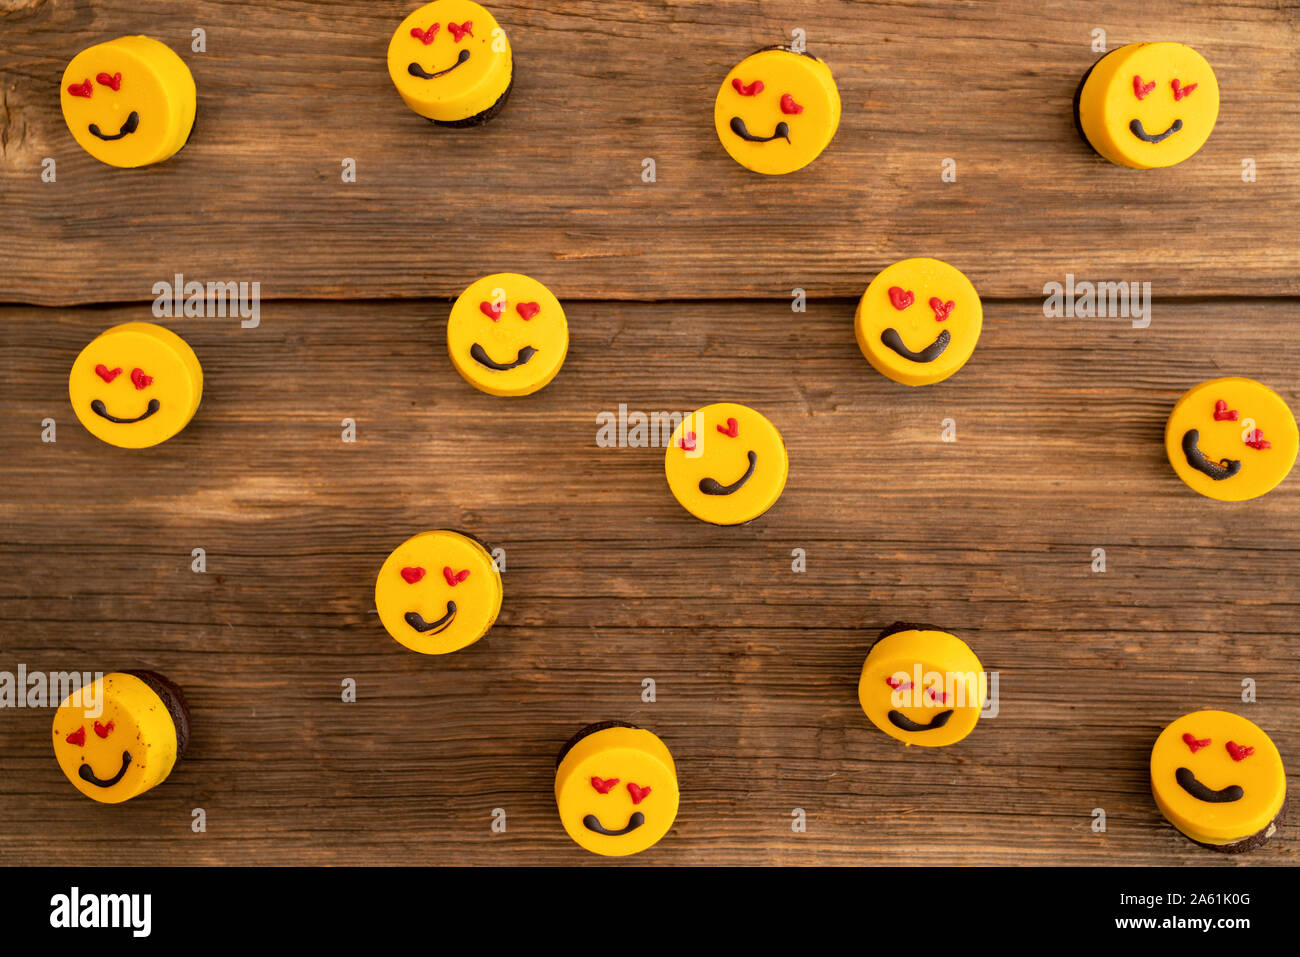 Viele leckere Cupcakes auf einer hölzernen Hintergrund mit aline. Stockfoto